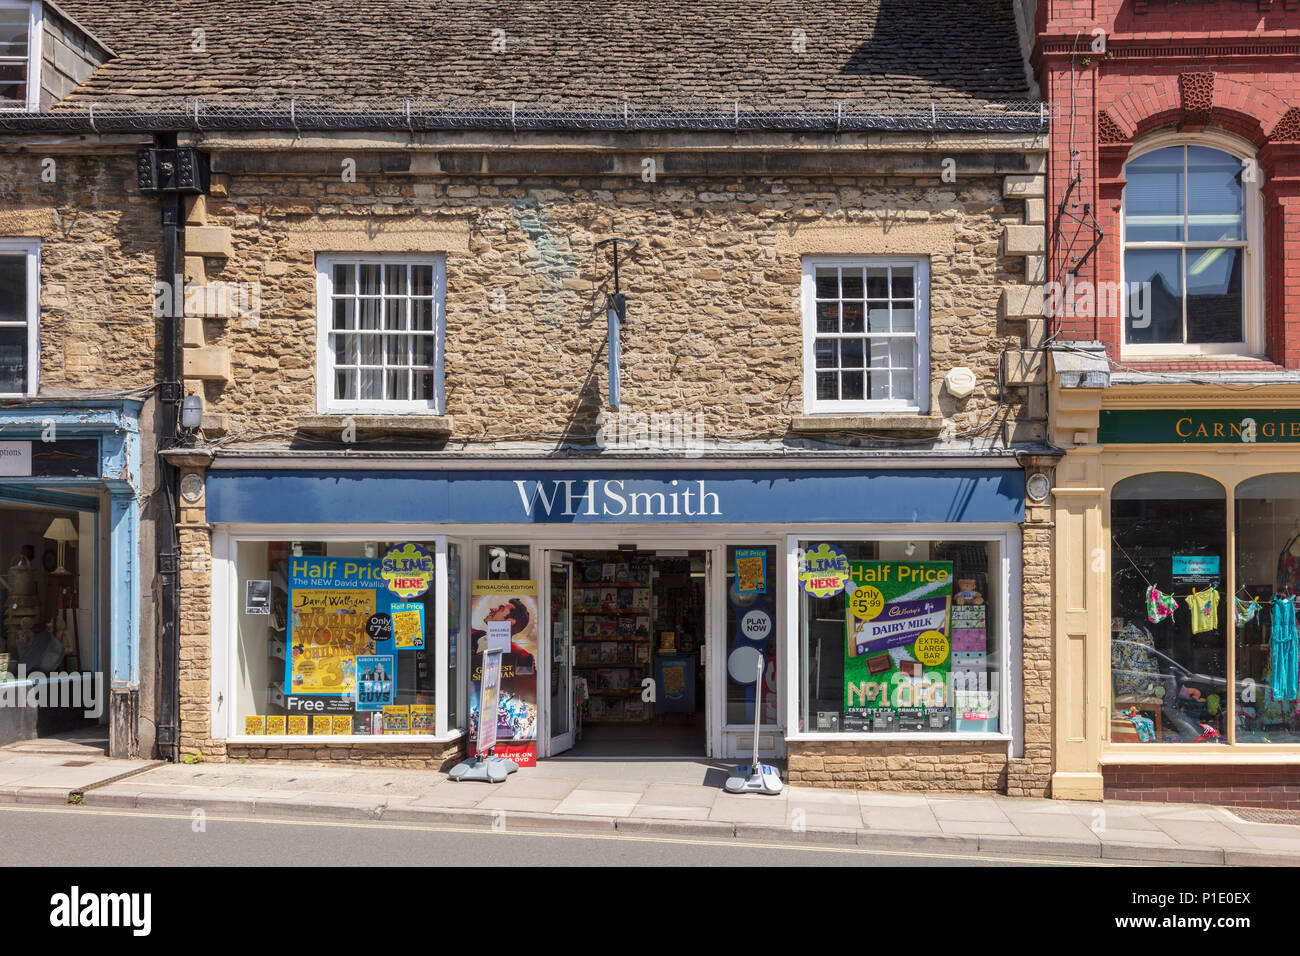 W H Smith store sur Malmesbury High Street, dans un bâtiment historique en pierre de Cotswold, Wiltshire, Royaume-Uni Banque D'Images